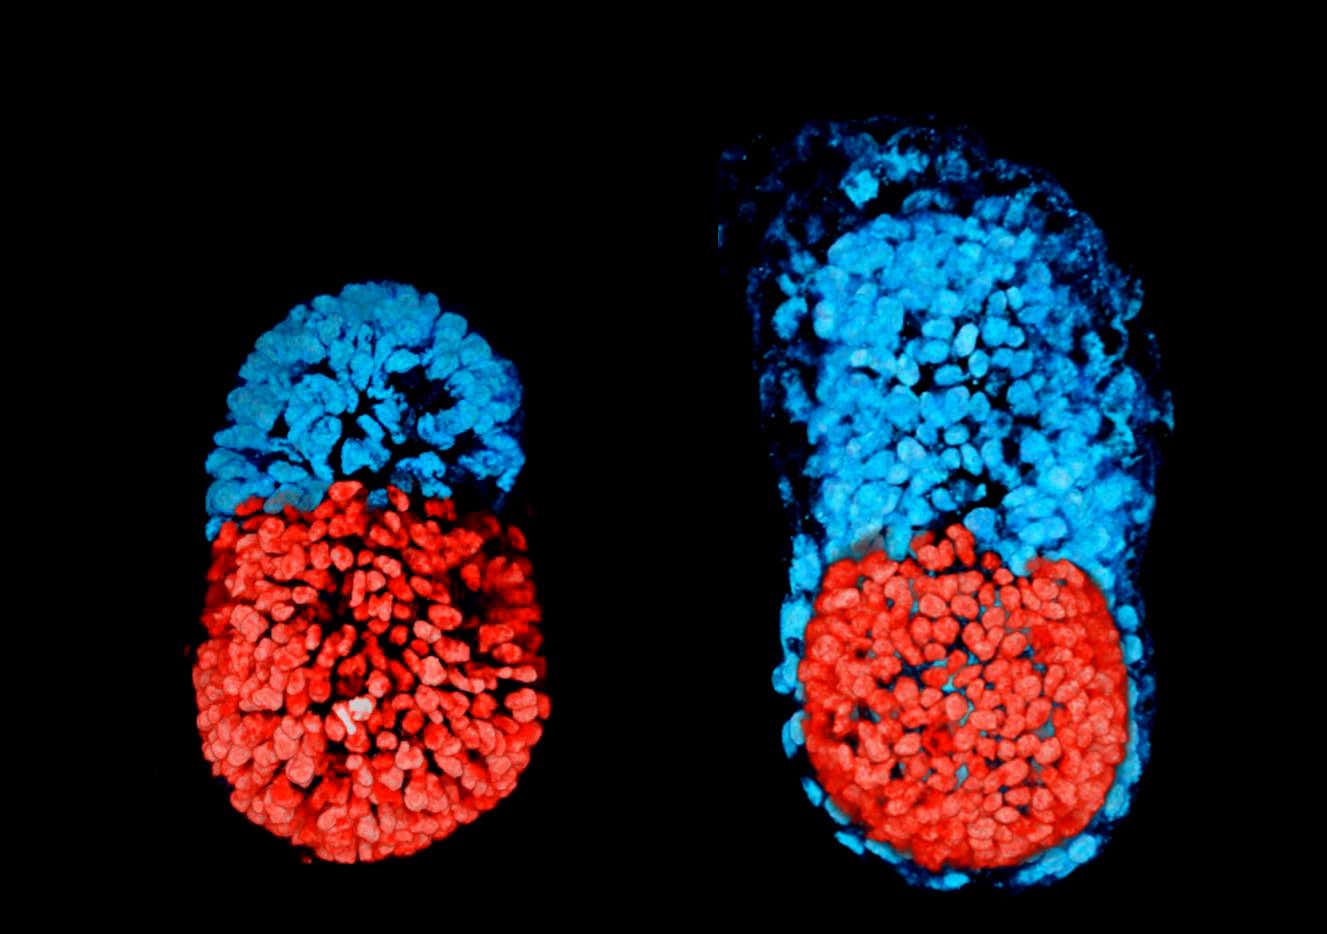 Embrión artificial cultivado en una placa a partir de dos tipos de células madre